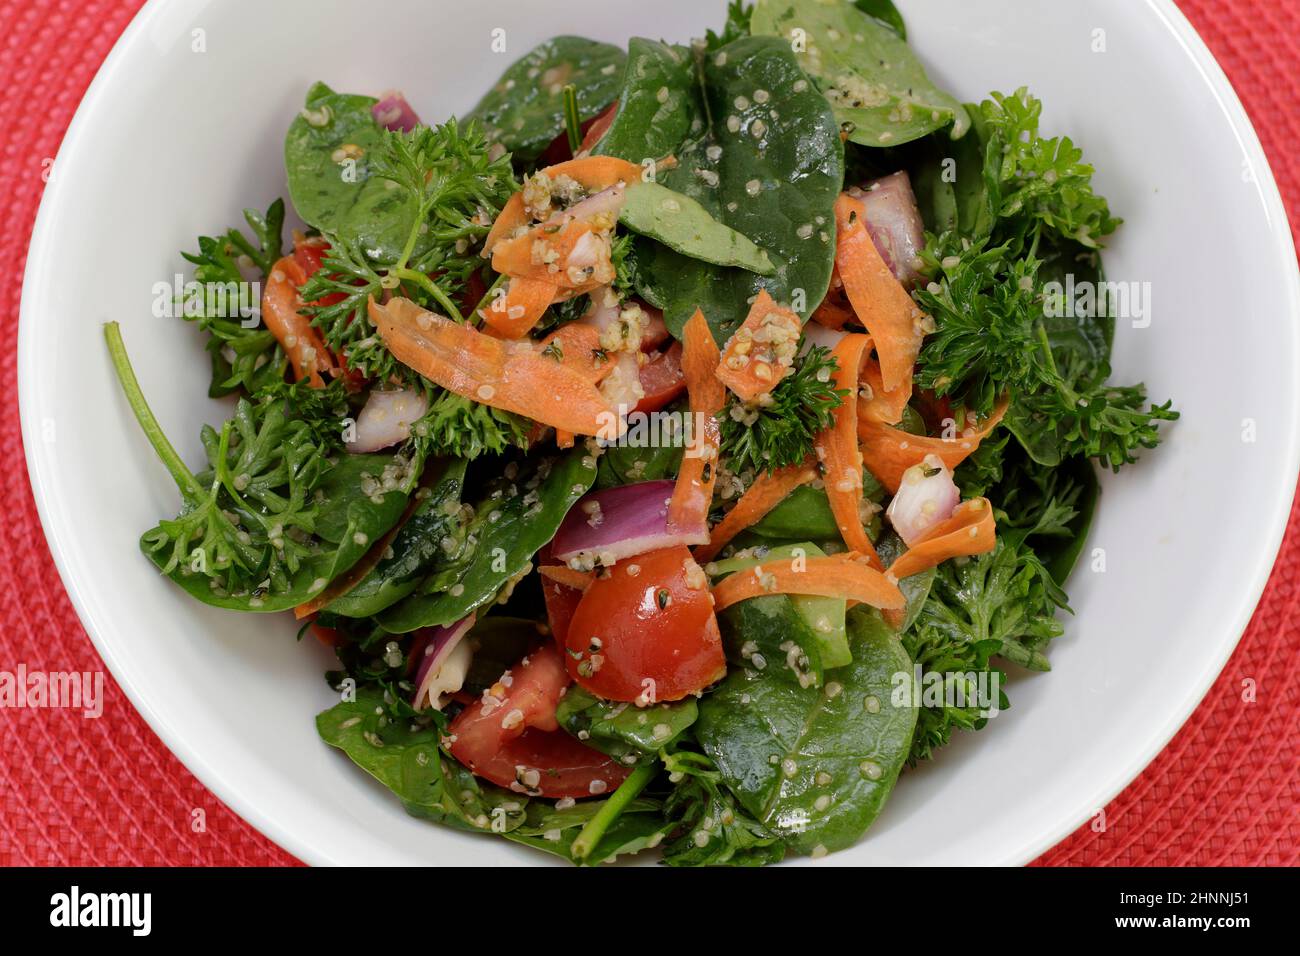 Verdure nutritive di spinaci e insalata di prezzemolo con verdure miste, cuori di canapa sgusciati e condimenti. Ciotola di un'insalata densa nutriente molto nutriente Foto Stock